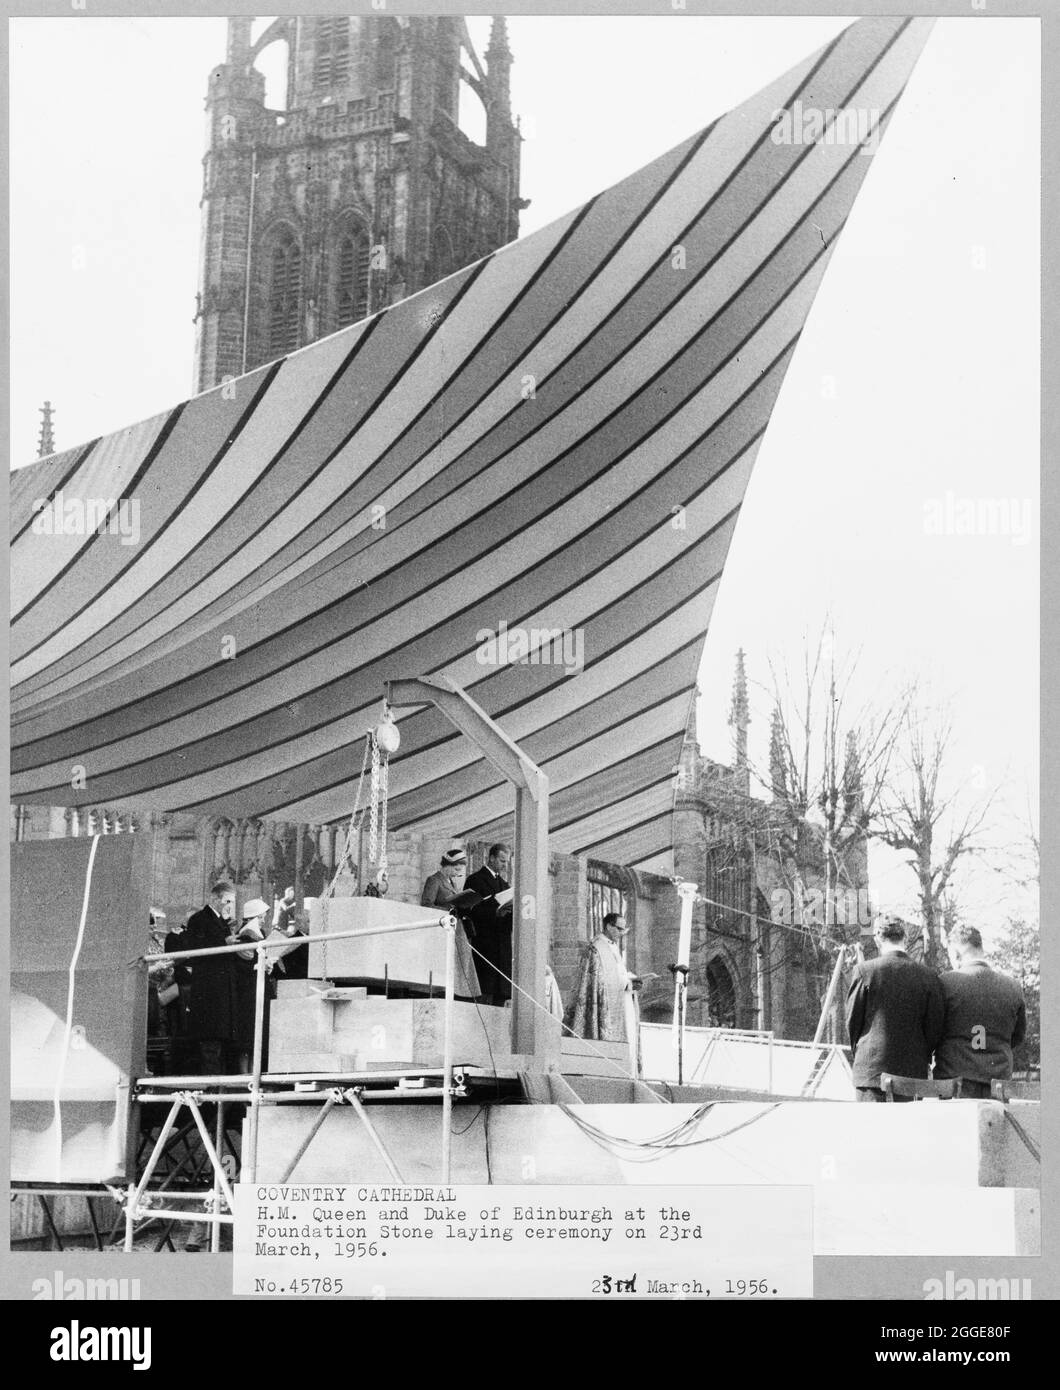 Vista di sua Maestà la Regina e il Duca di Edimburgo alla cerimonia di posa in pietra della Cattedrale di Coventry. Dopo il bombardamento della Cattedrale di Coventry nel novembre 1940, nel 1950 è stato lanciato un concorso per trovare un progetto per una nuova cattedrale. Il progetto vincente è stato di Sir Basil Spence (1907-1976) da uno degli oltre 200 disegni presentati. Tra la metà degli anni '50 e il 1962 si svolsero lavori di costruzione. La regina Elisabetta II pose la pietra di fondazione il 23 marzo 1956. Foto Stock